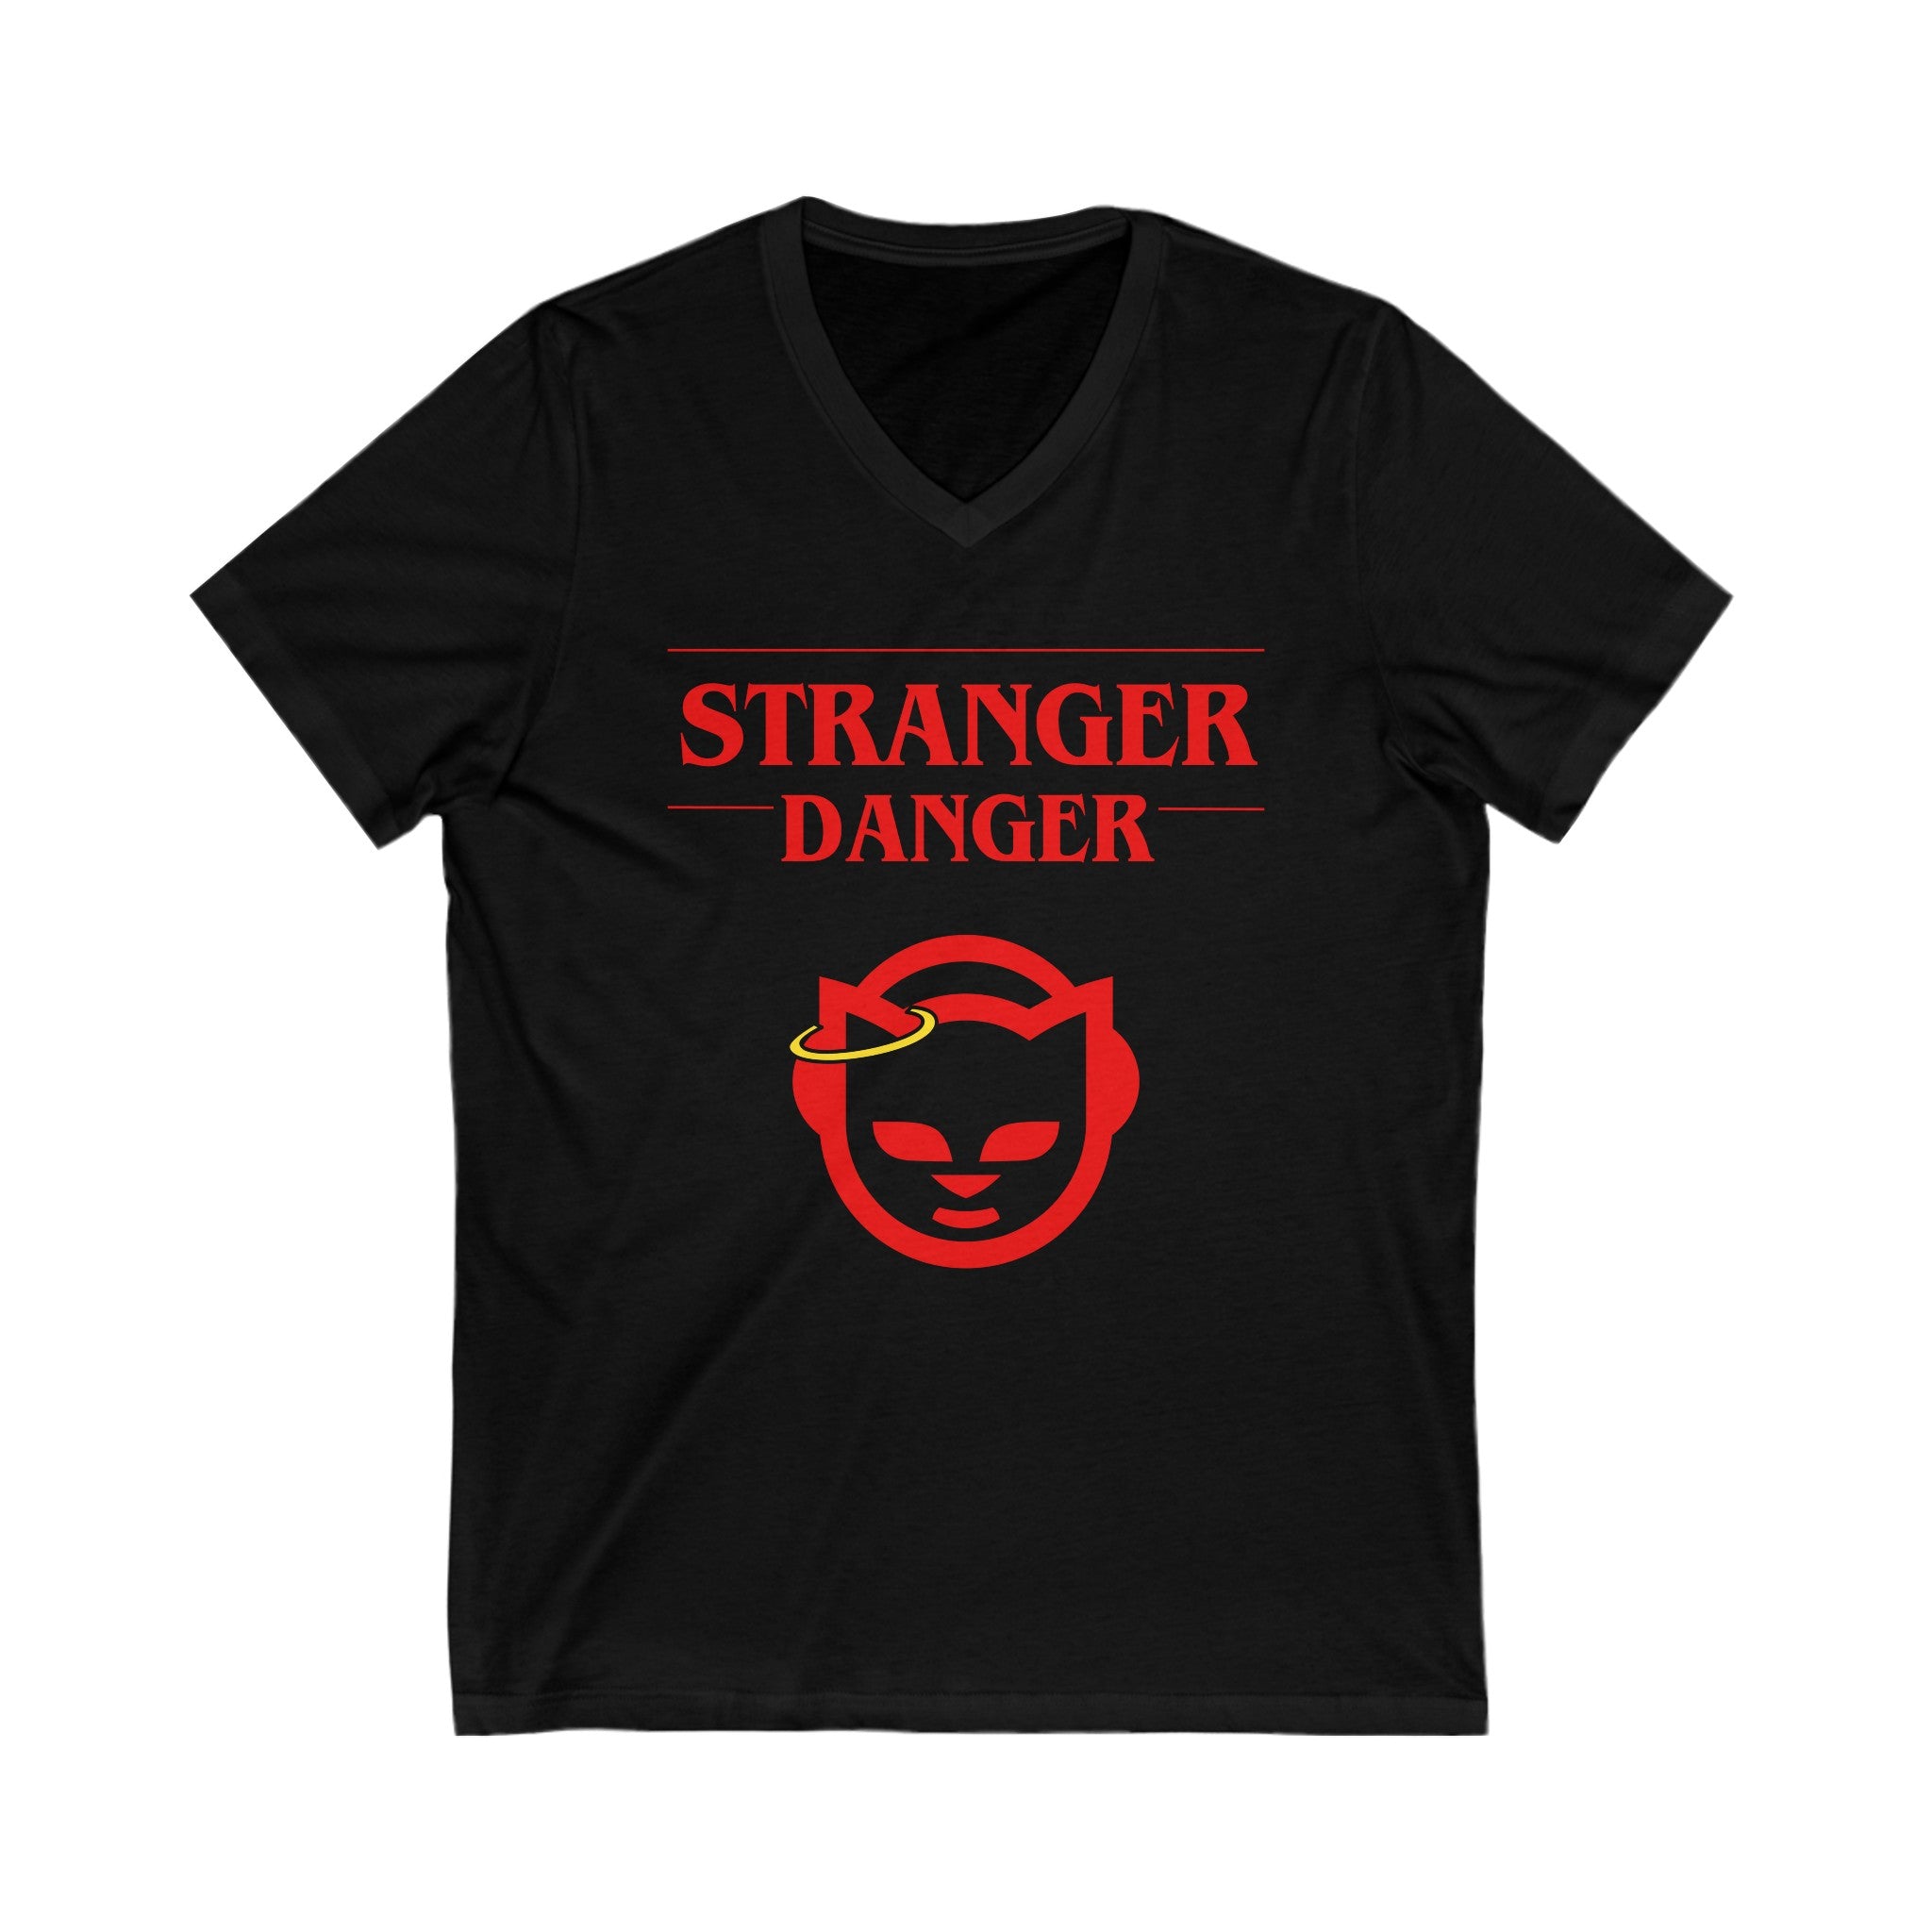 FURDreams “Stranger” III Short Sleeve V-Neck